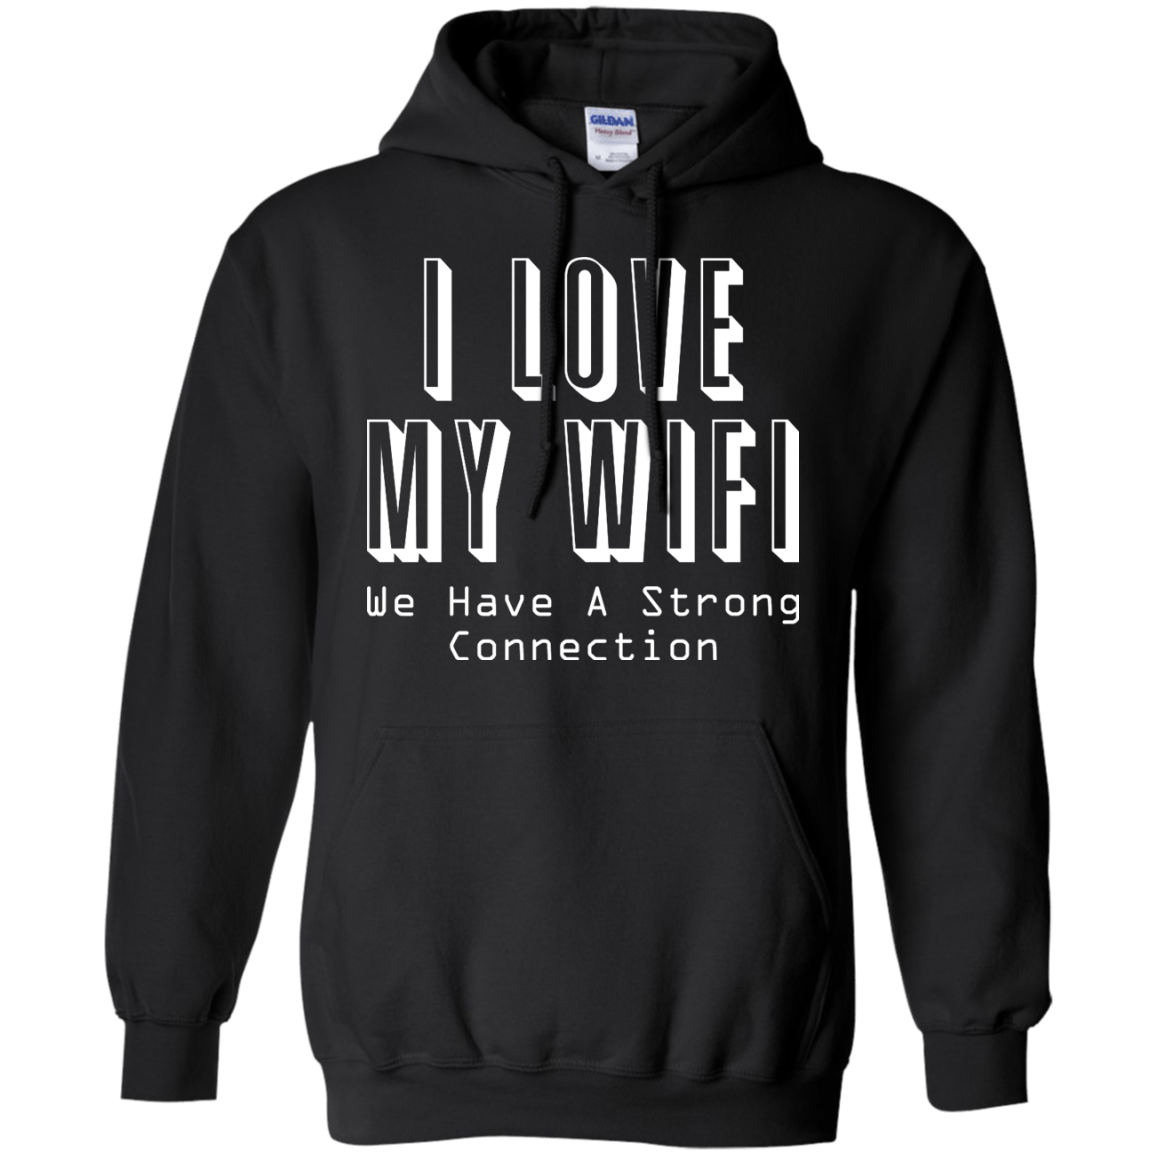 Me encanta mi WiFi: tenemos una conexión sólida